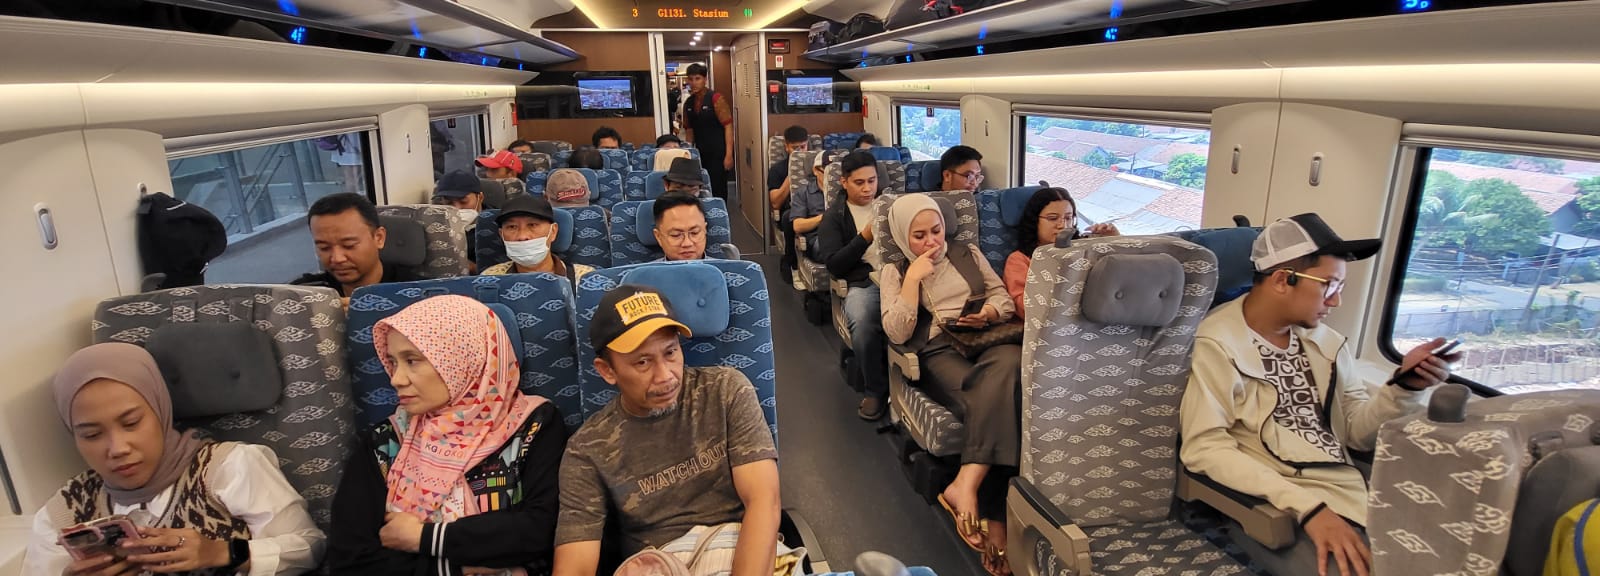 Hari Kedua Tiket Berbayar Kereta Cepat Whoosh Angkut Sekitar 4.000 Penumpang